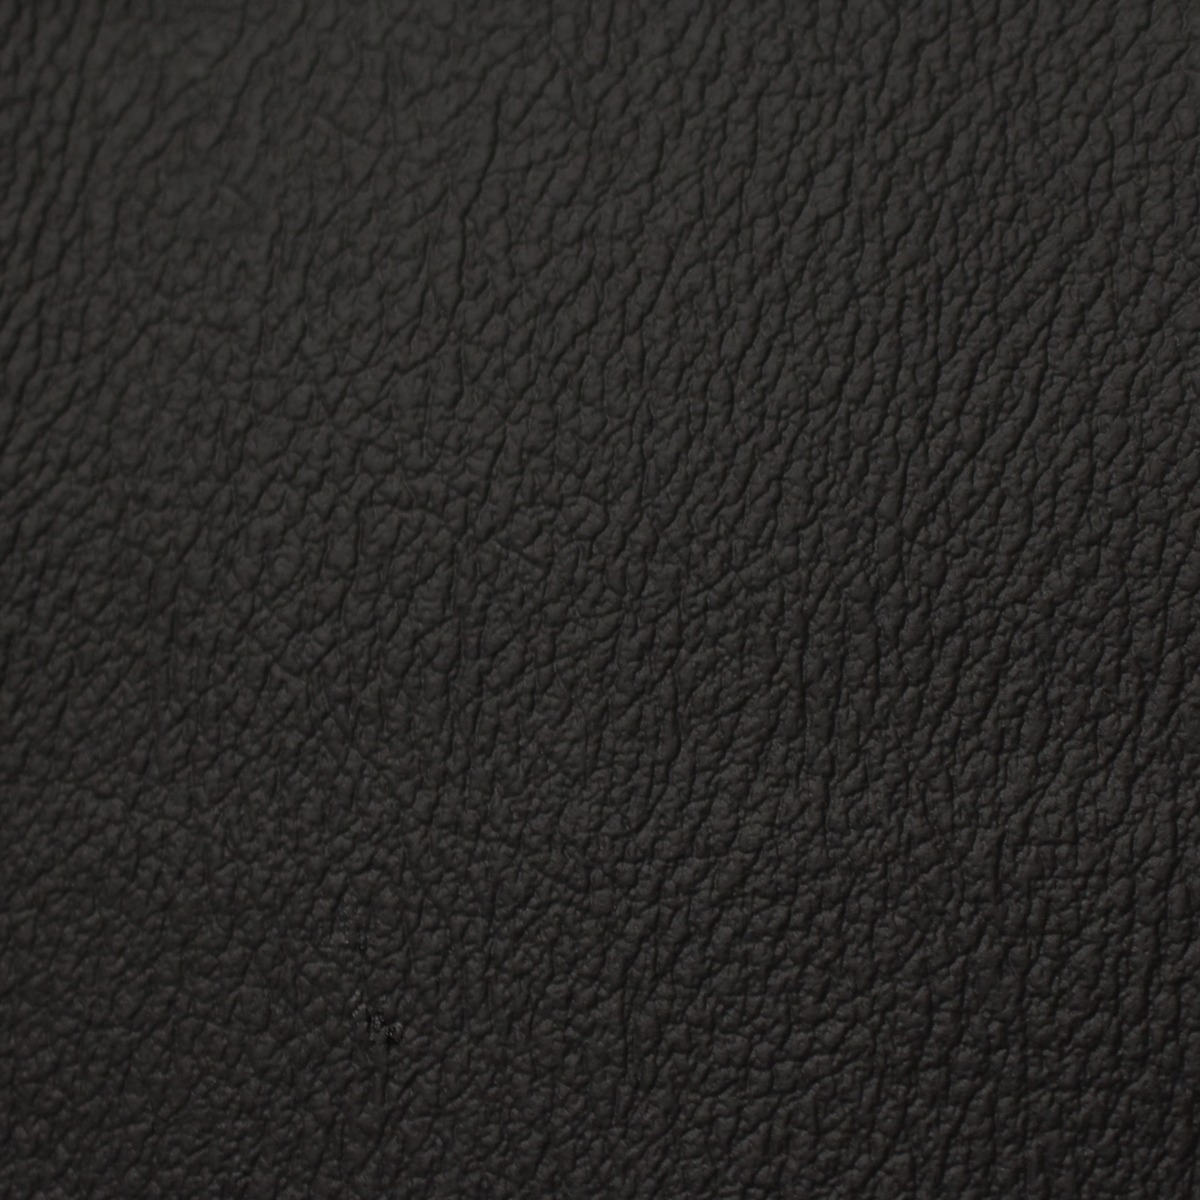 Milled Pebble Ebony Leather